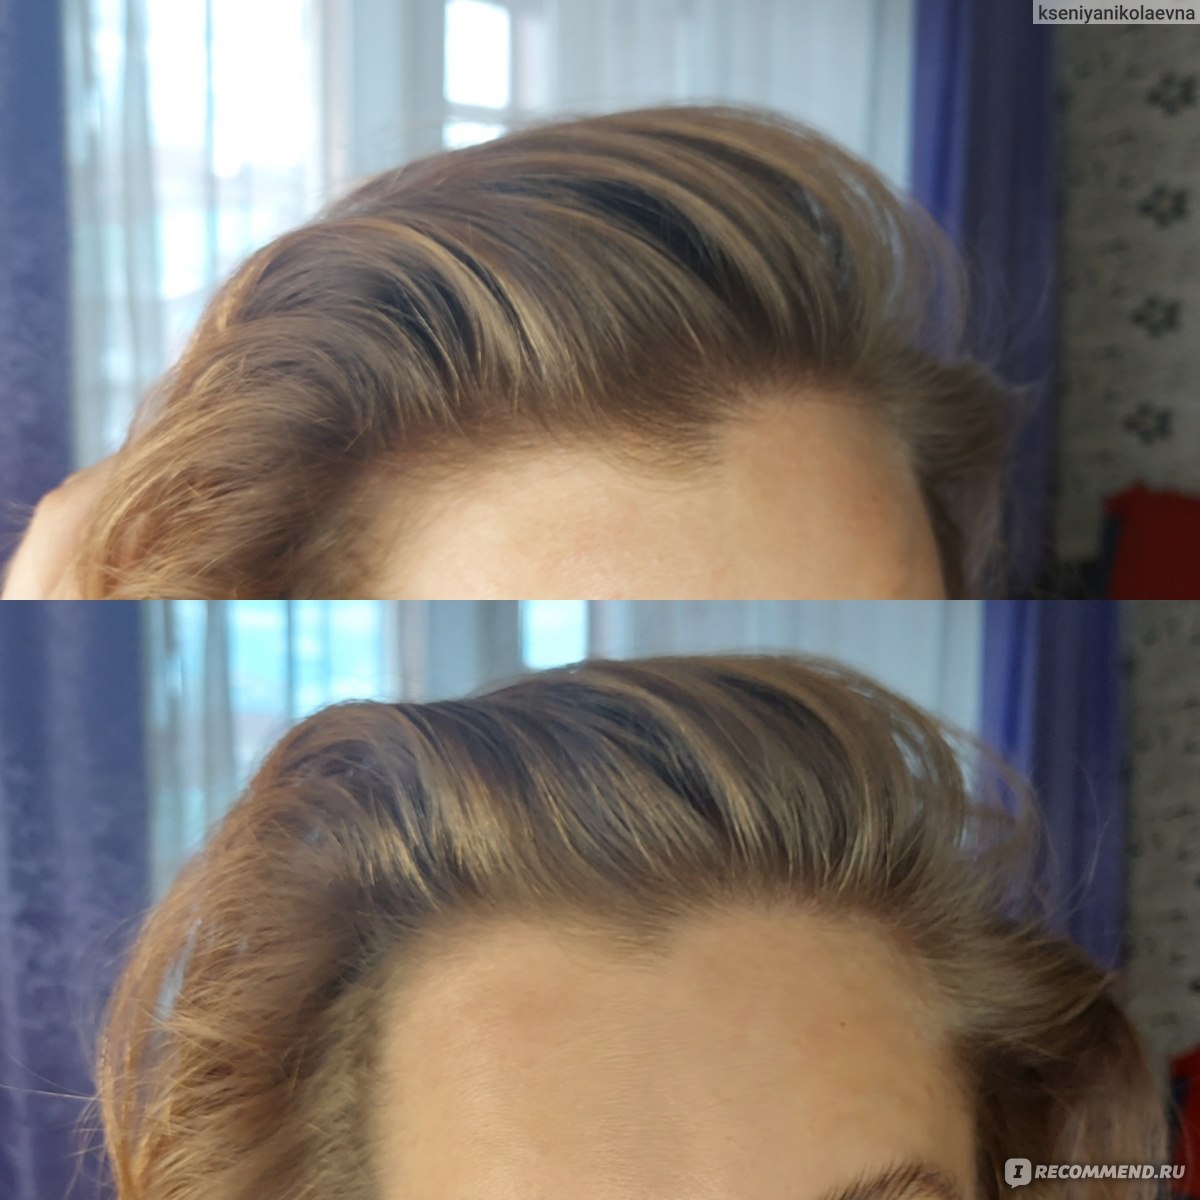 Мусс для волос Белита-Витэкс Lux Volume Роскошный Объем до 5 дней Mega-объем для укладки волос фото